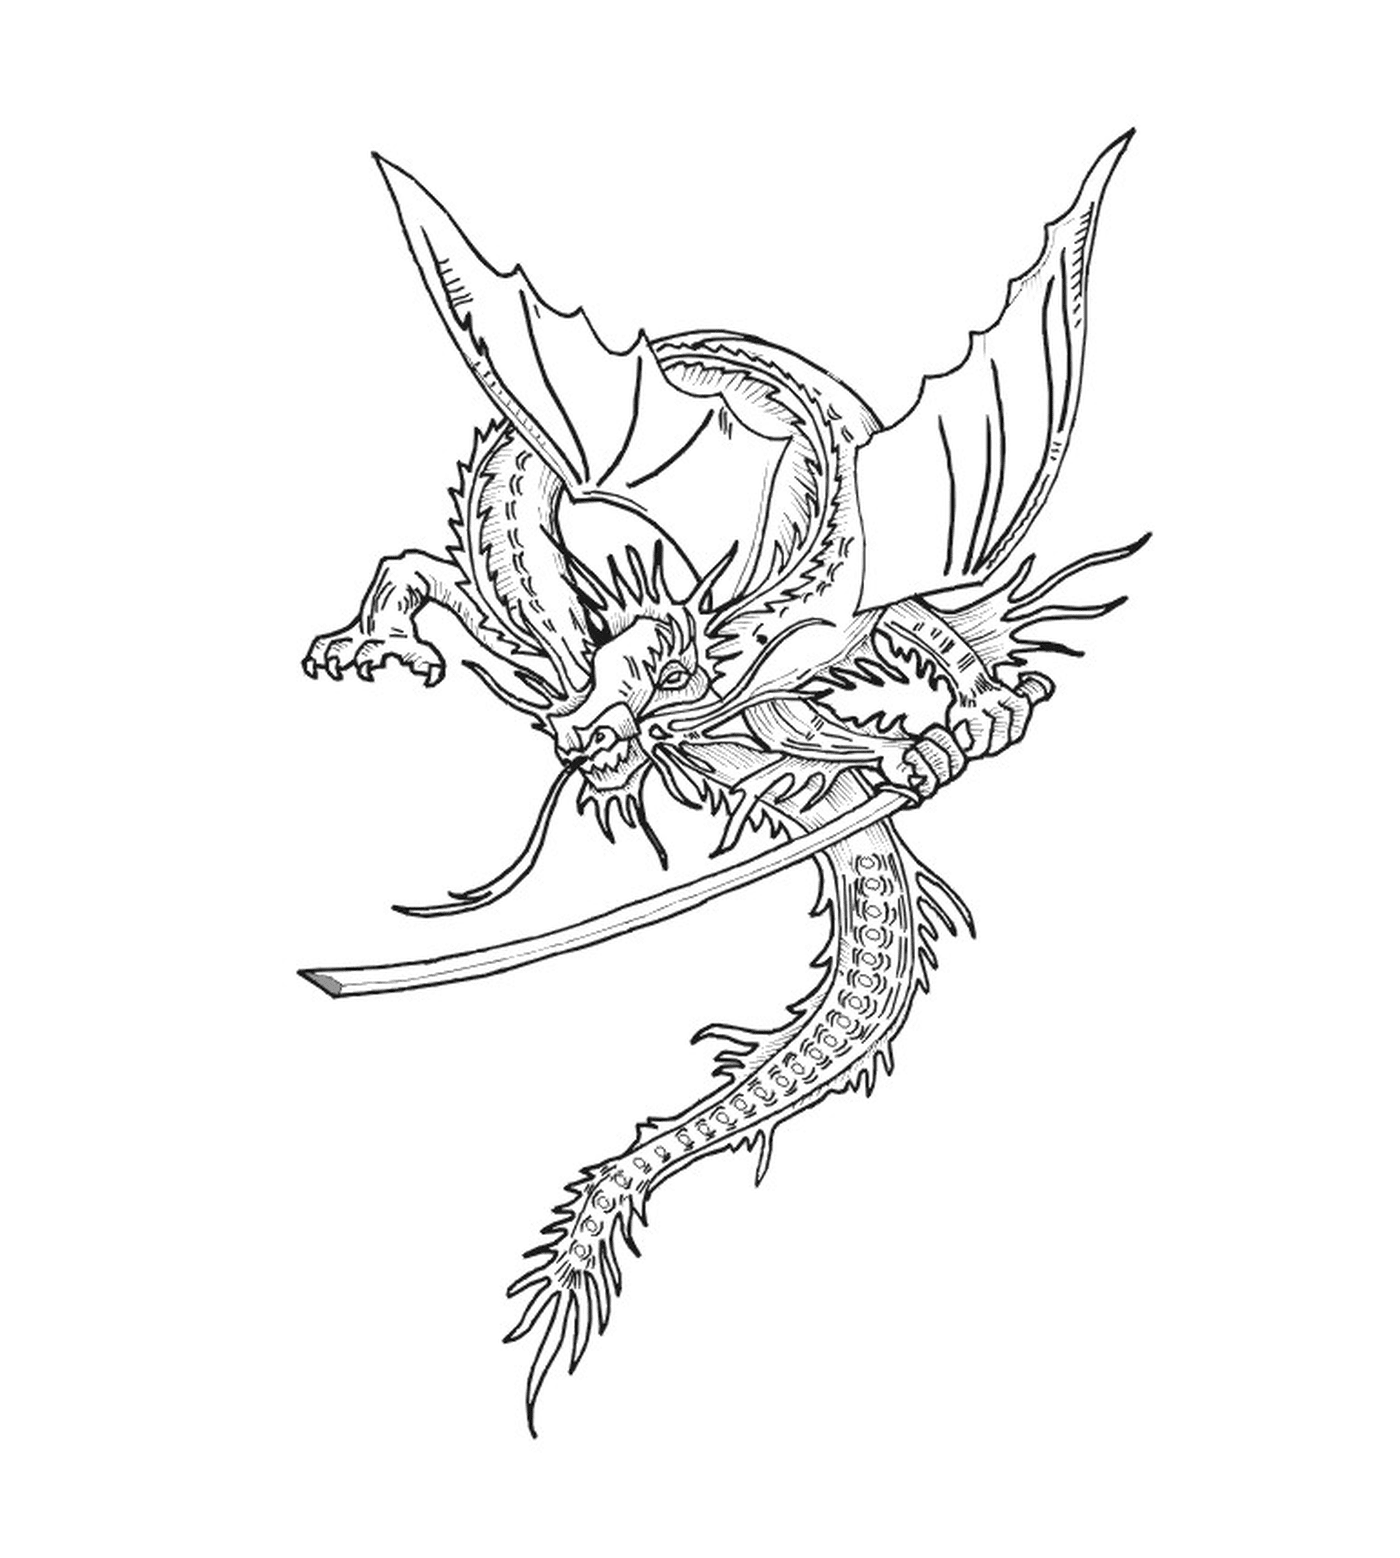  Um dragão com uma espada 